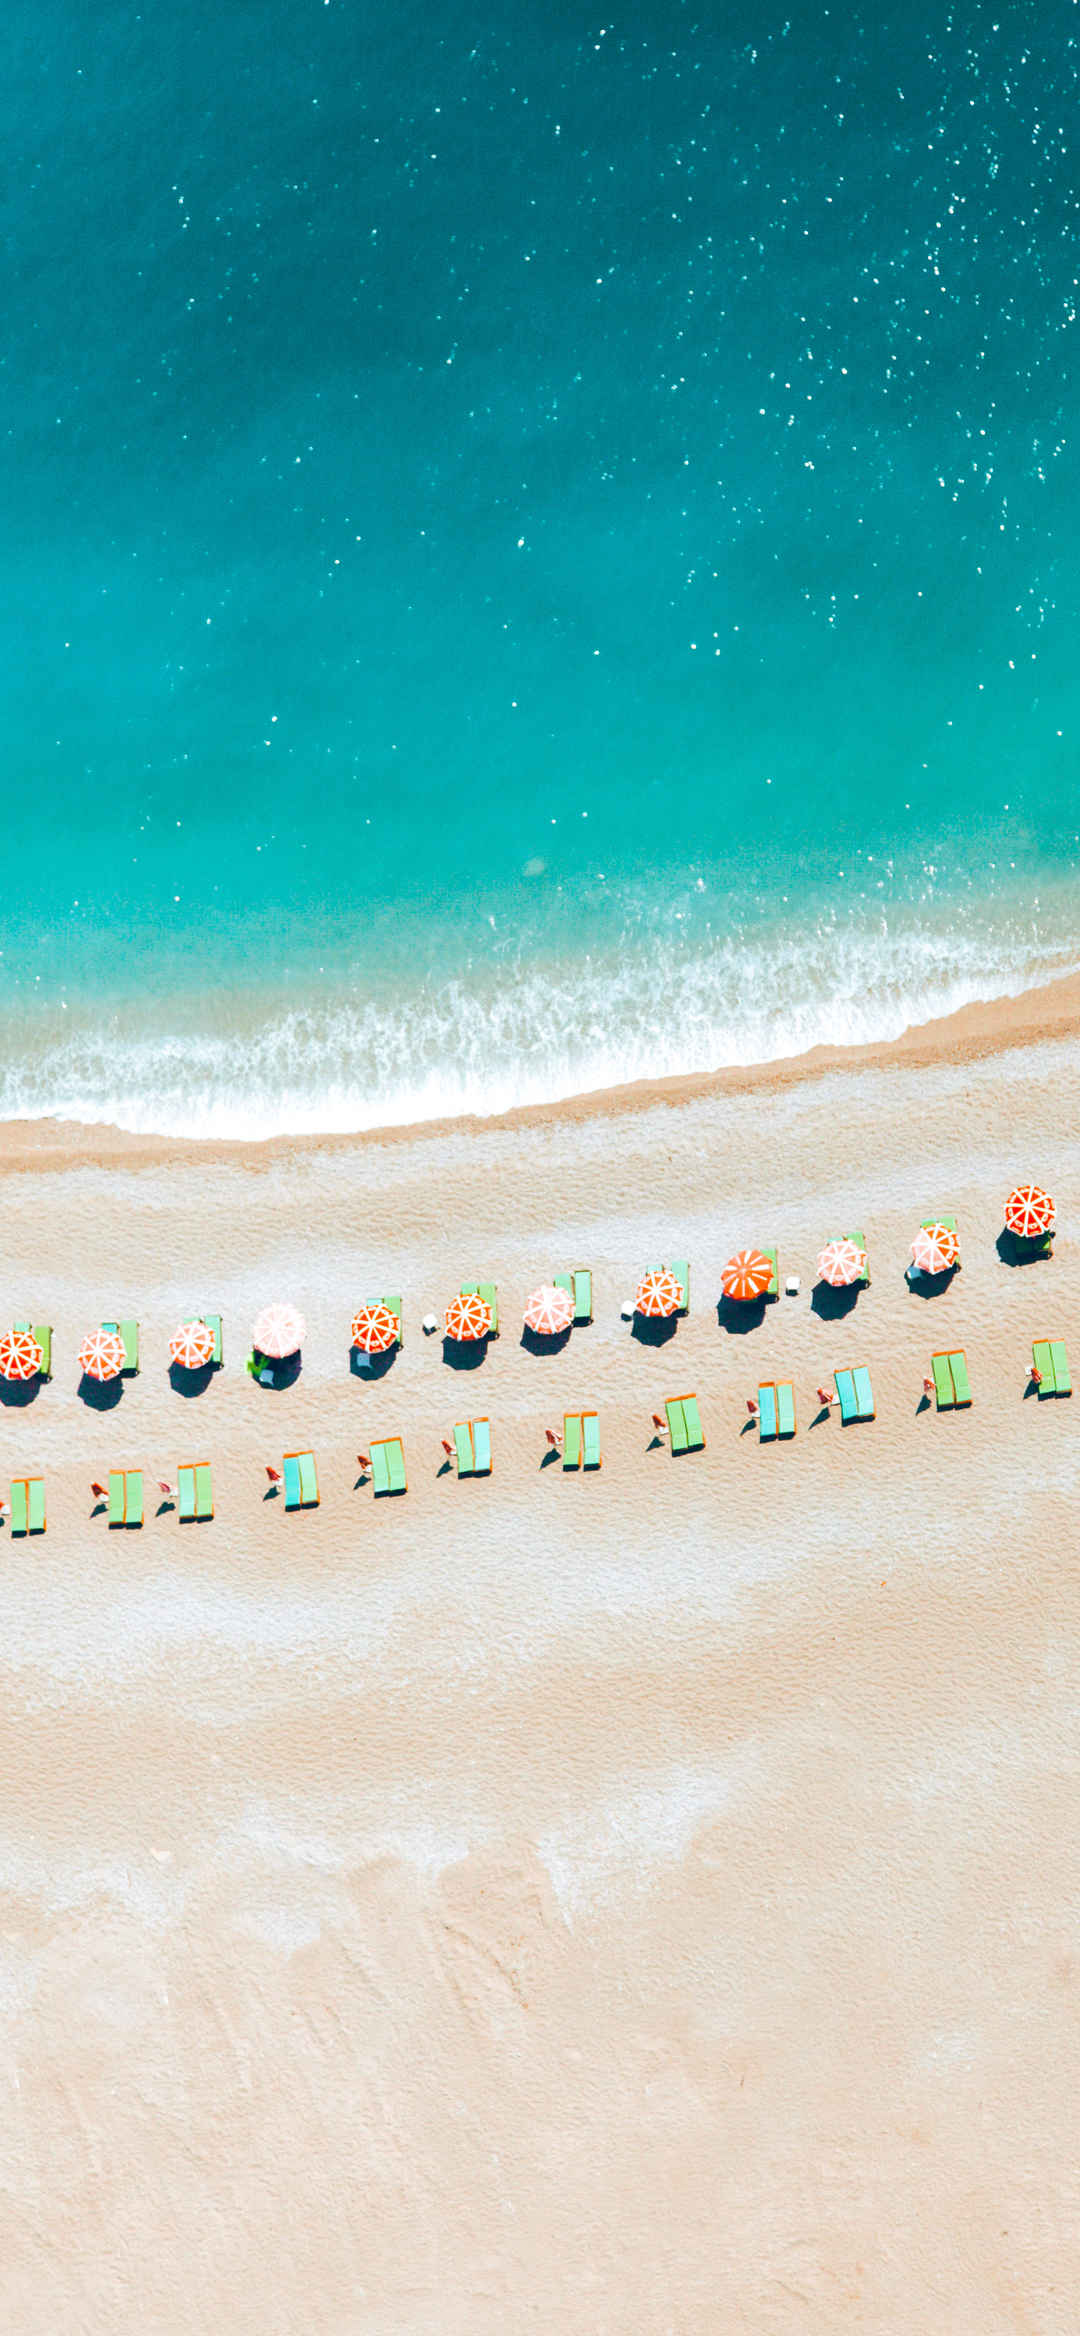 大海沙滩旅游人群竖屏风景壁纸-